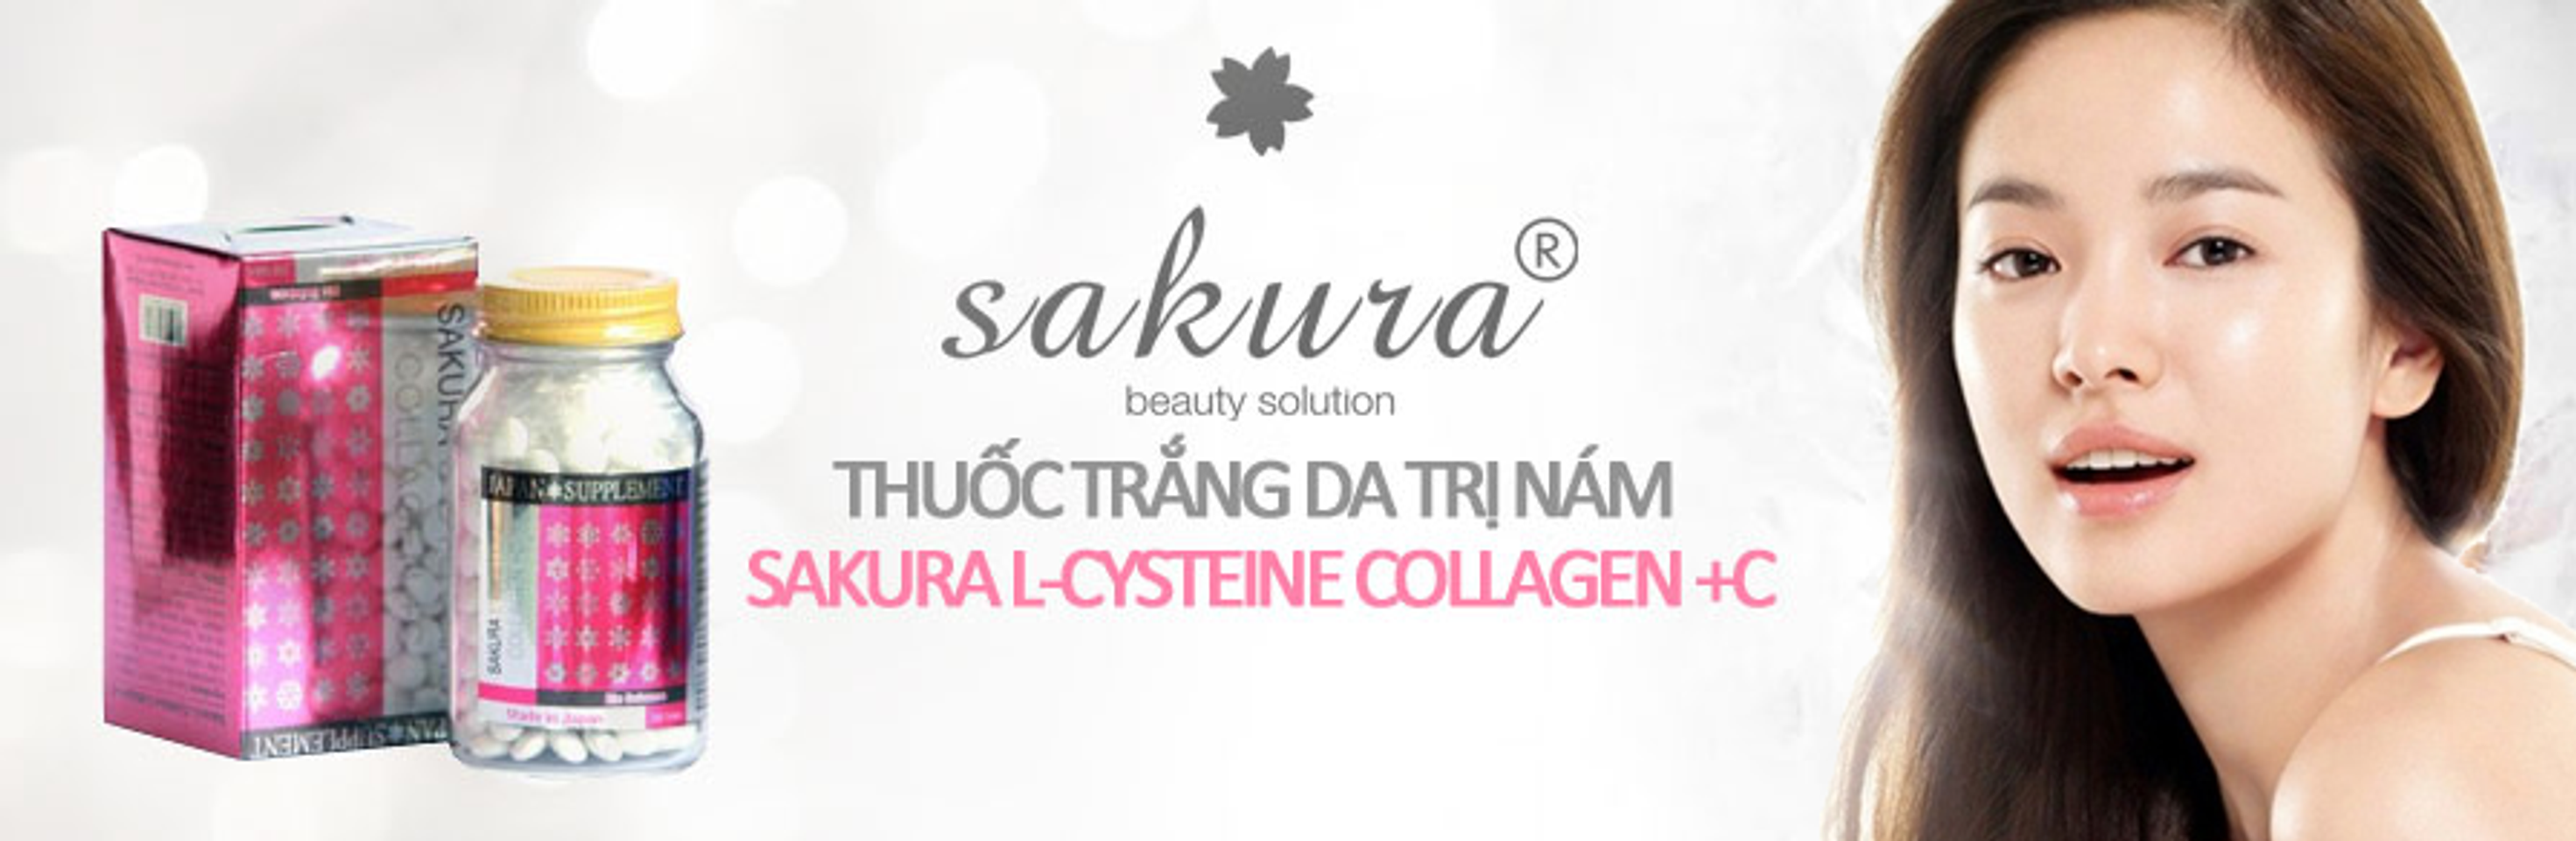 Sakura L-Cystine Collagen trị nám và tàn nhang, làm trắng da tự nhiên_chiaki.vn